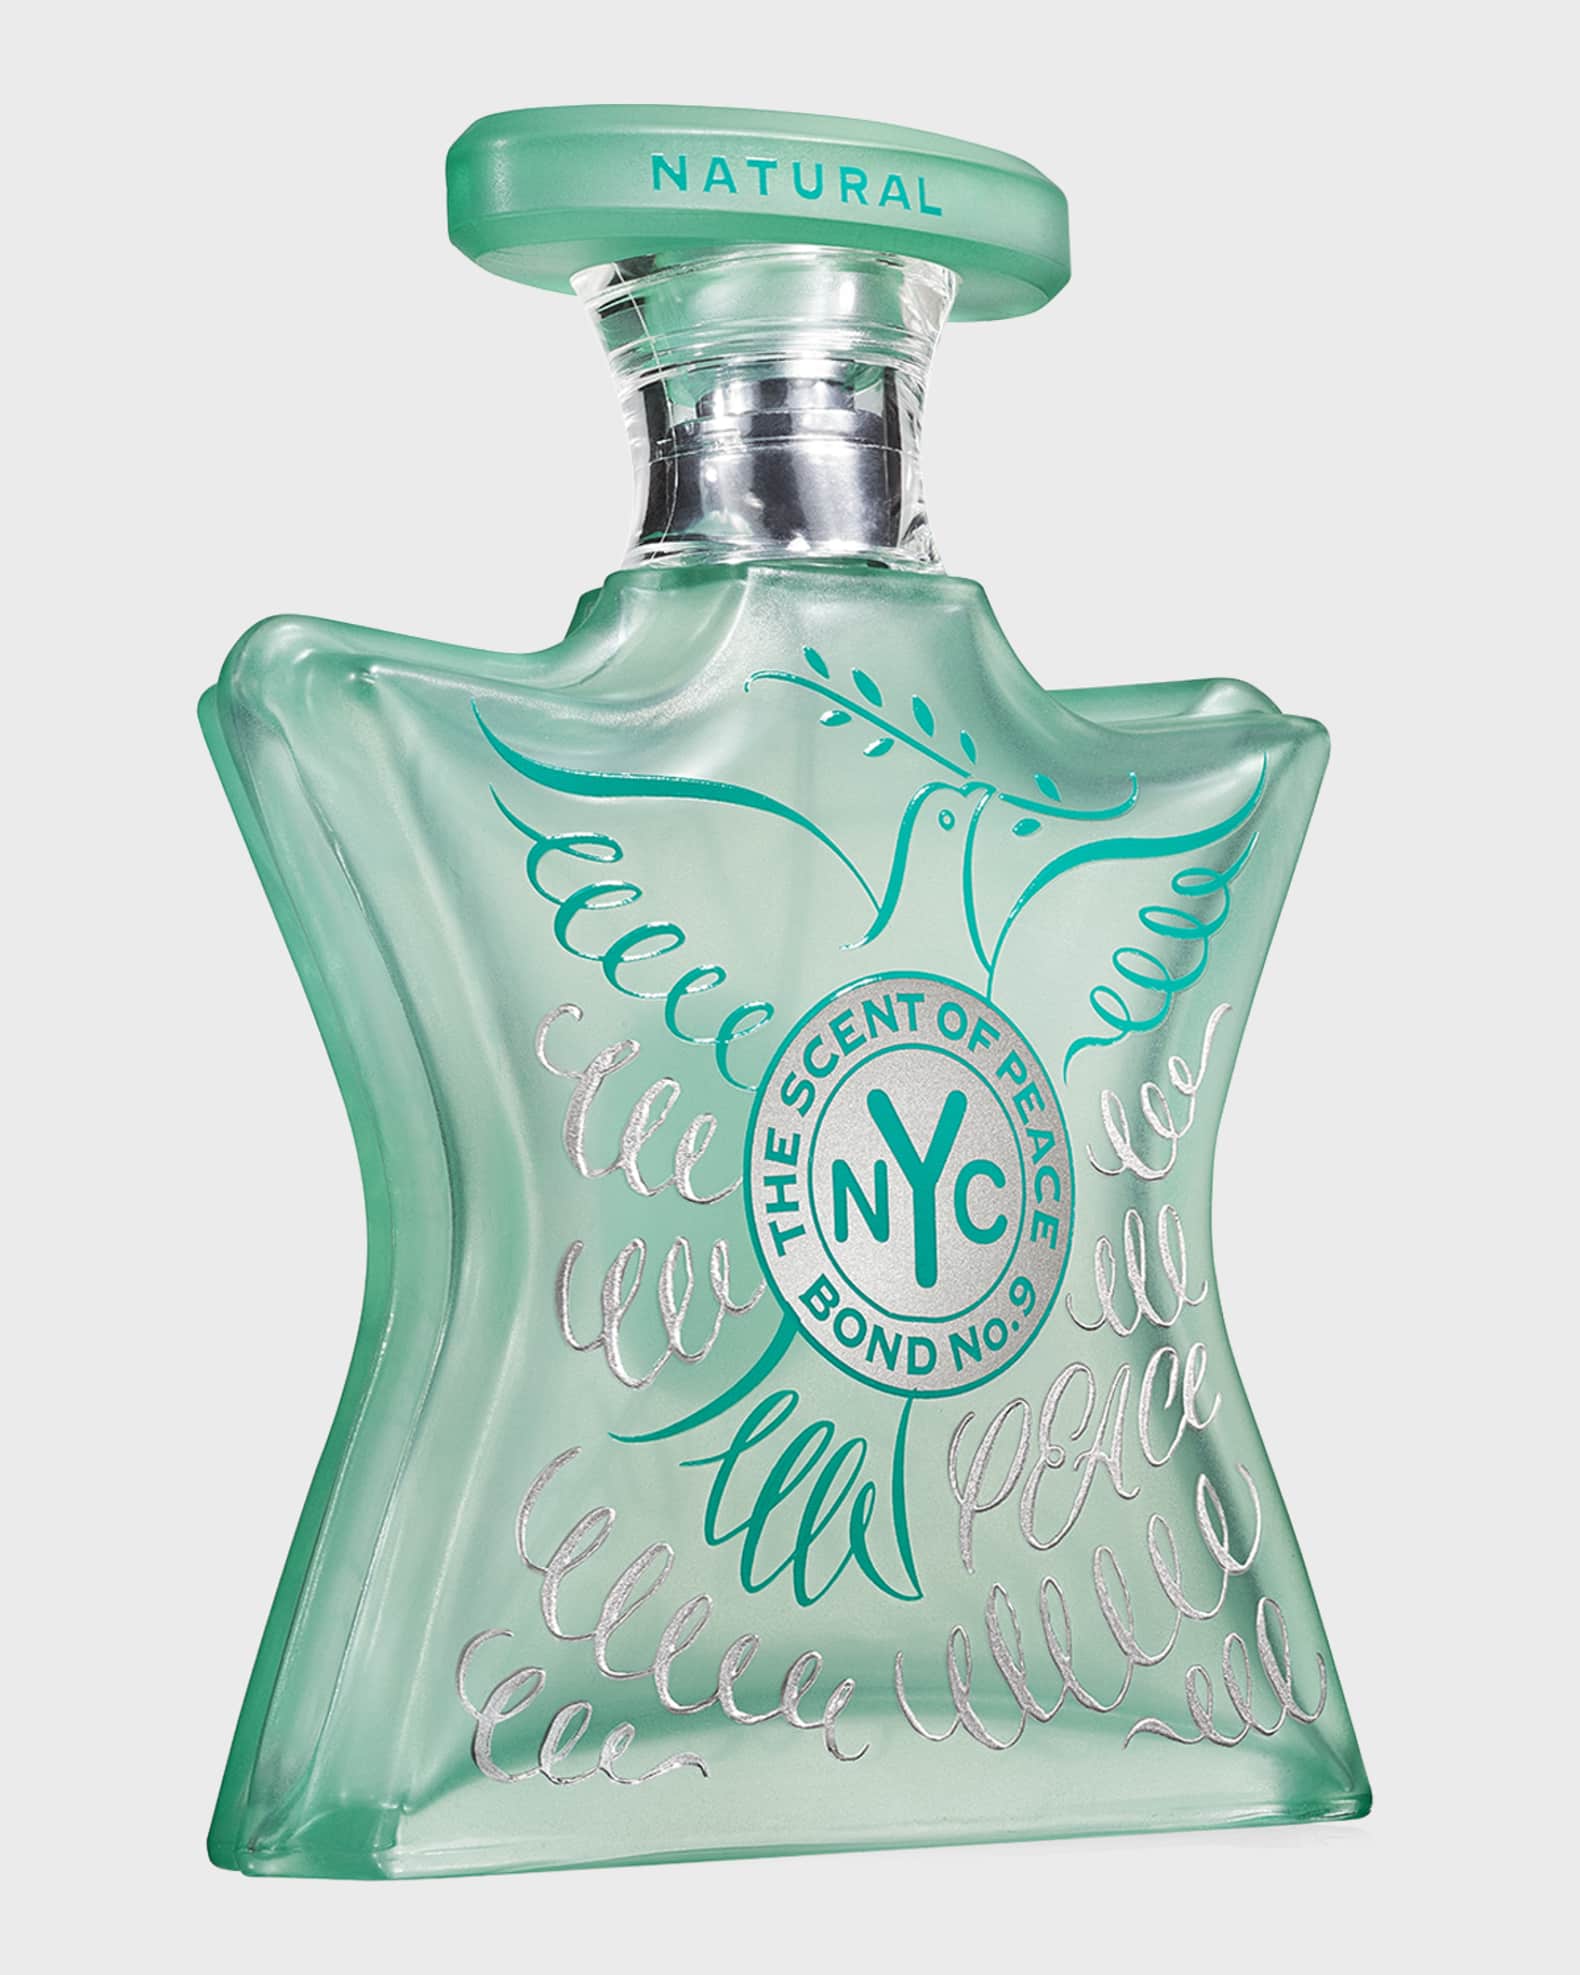 Bond No. 9 New York Signature Scent, 1.7oz Pure Parfum Spray for Unisex 